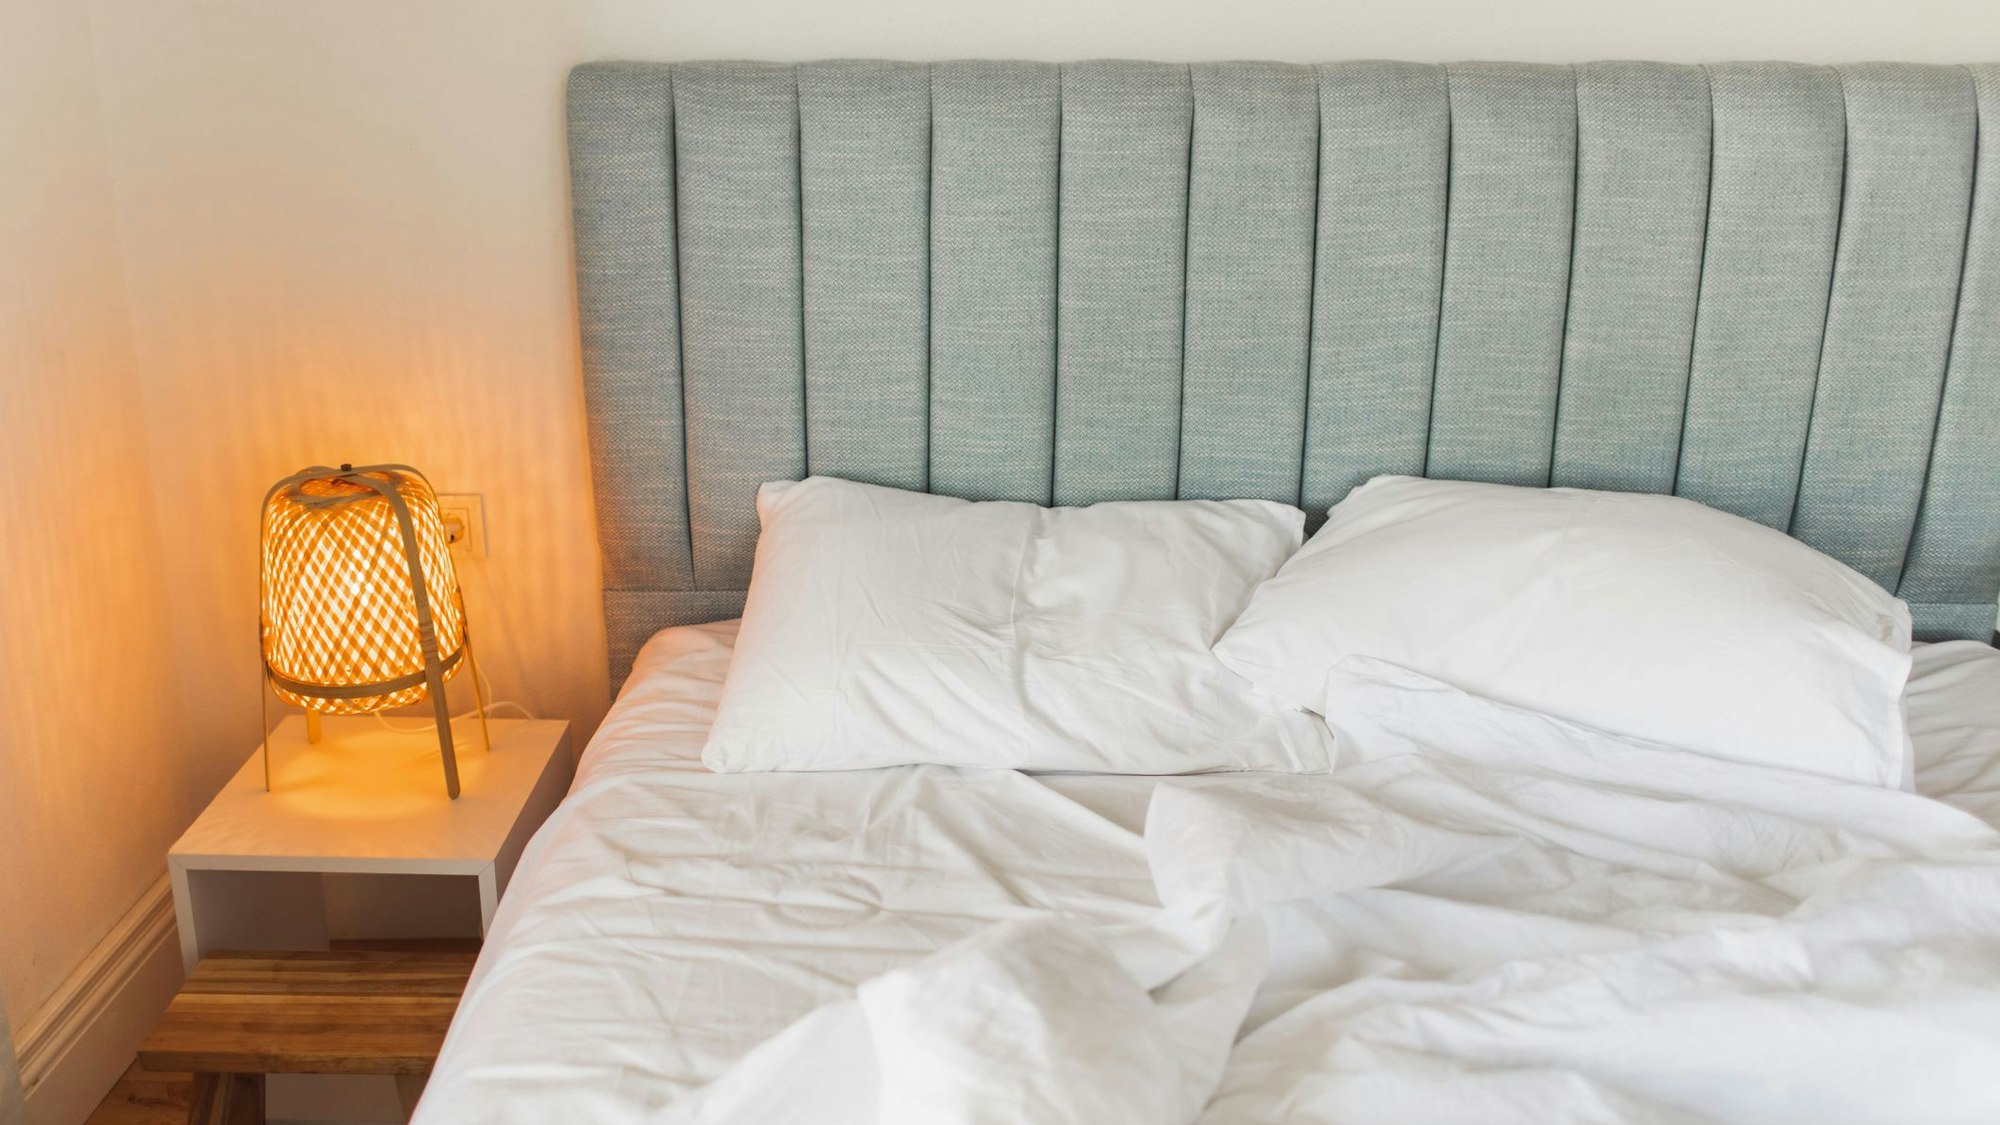 Auf dem Foto sieht man ein graues Bett, links daneben steht ein Nachtschrank mit einer eingeschalteten Lampe darauf.